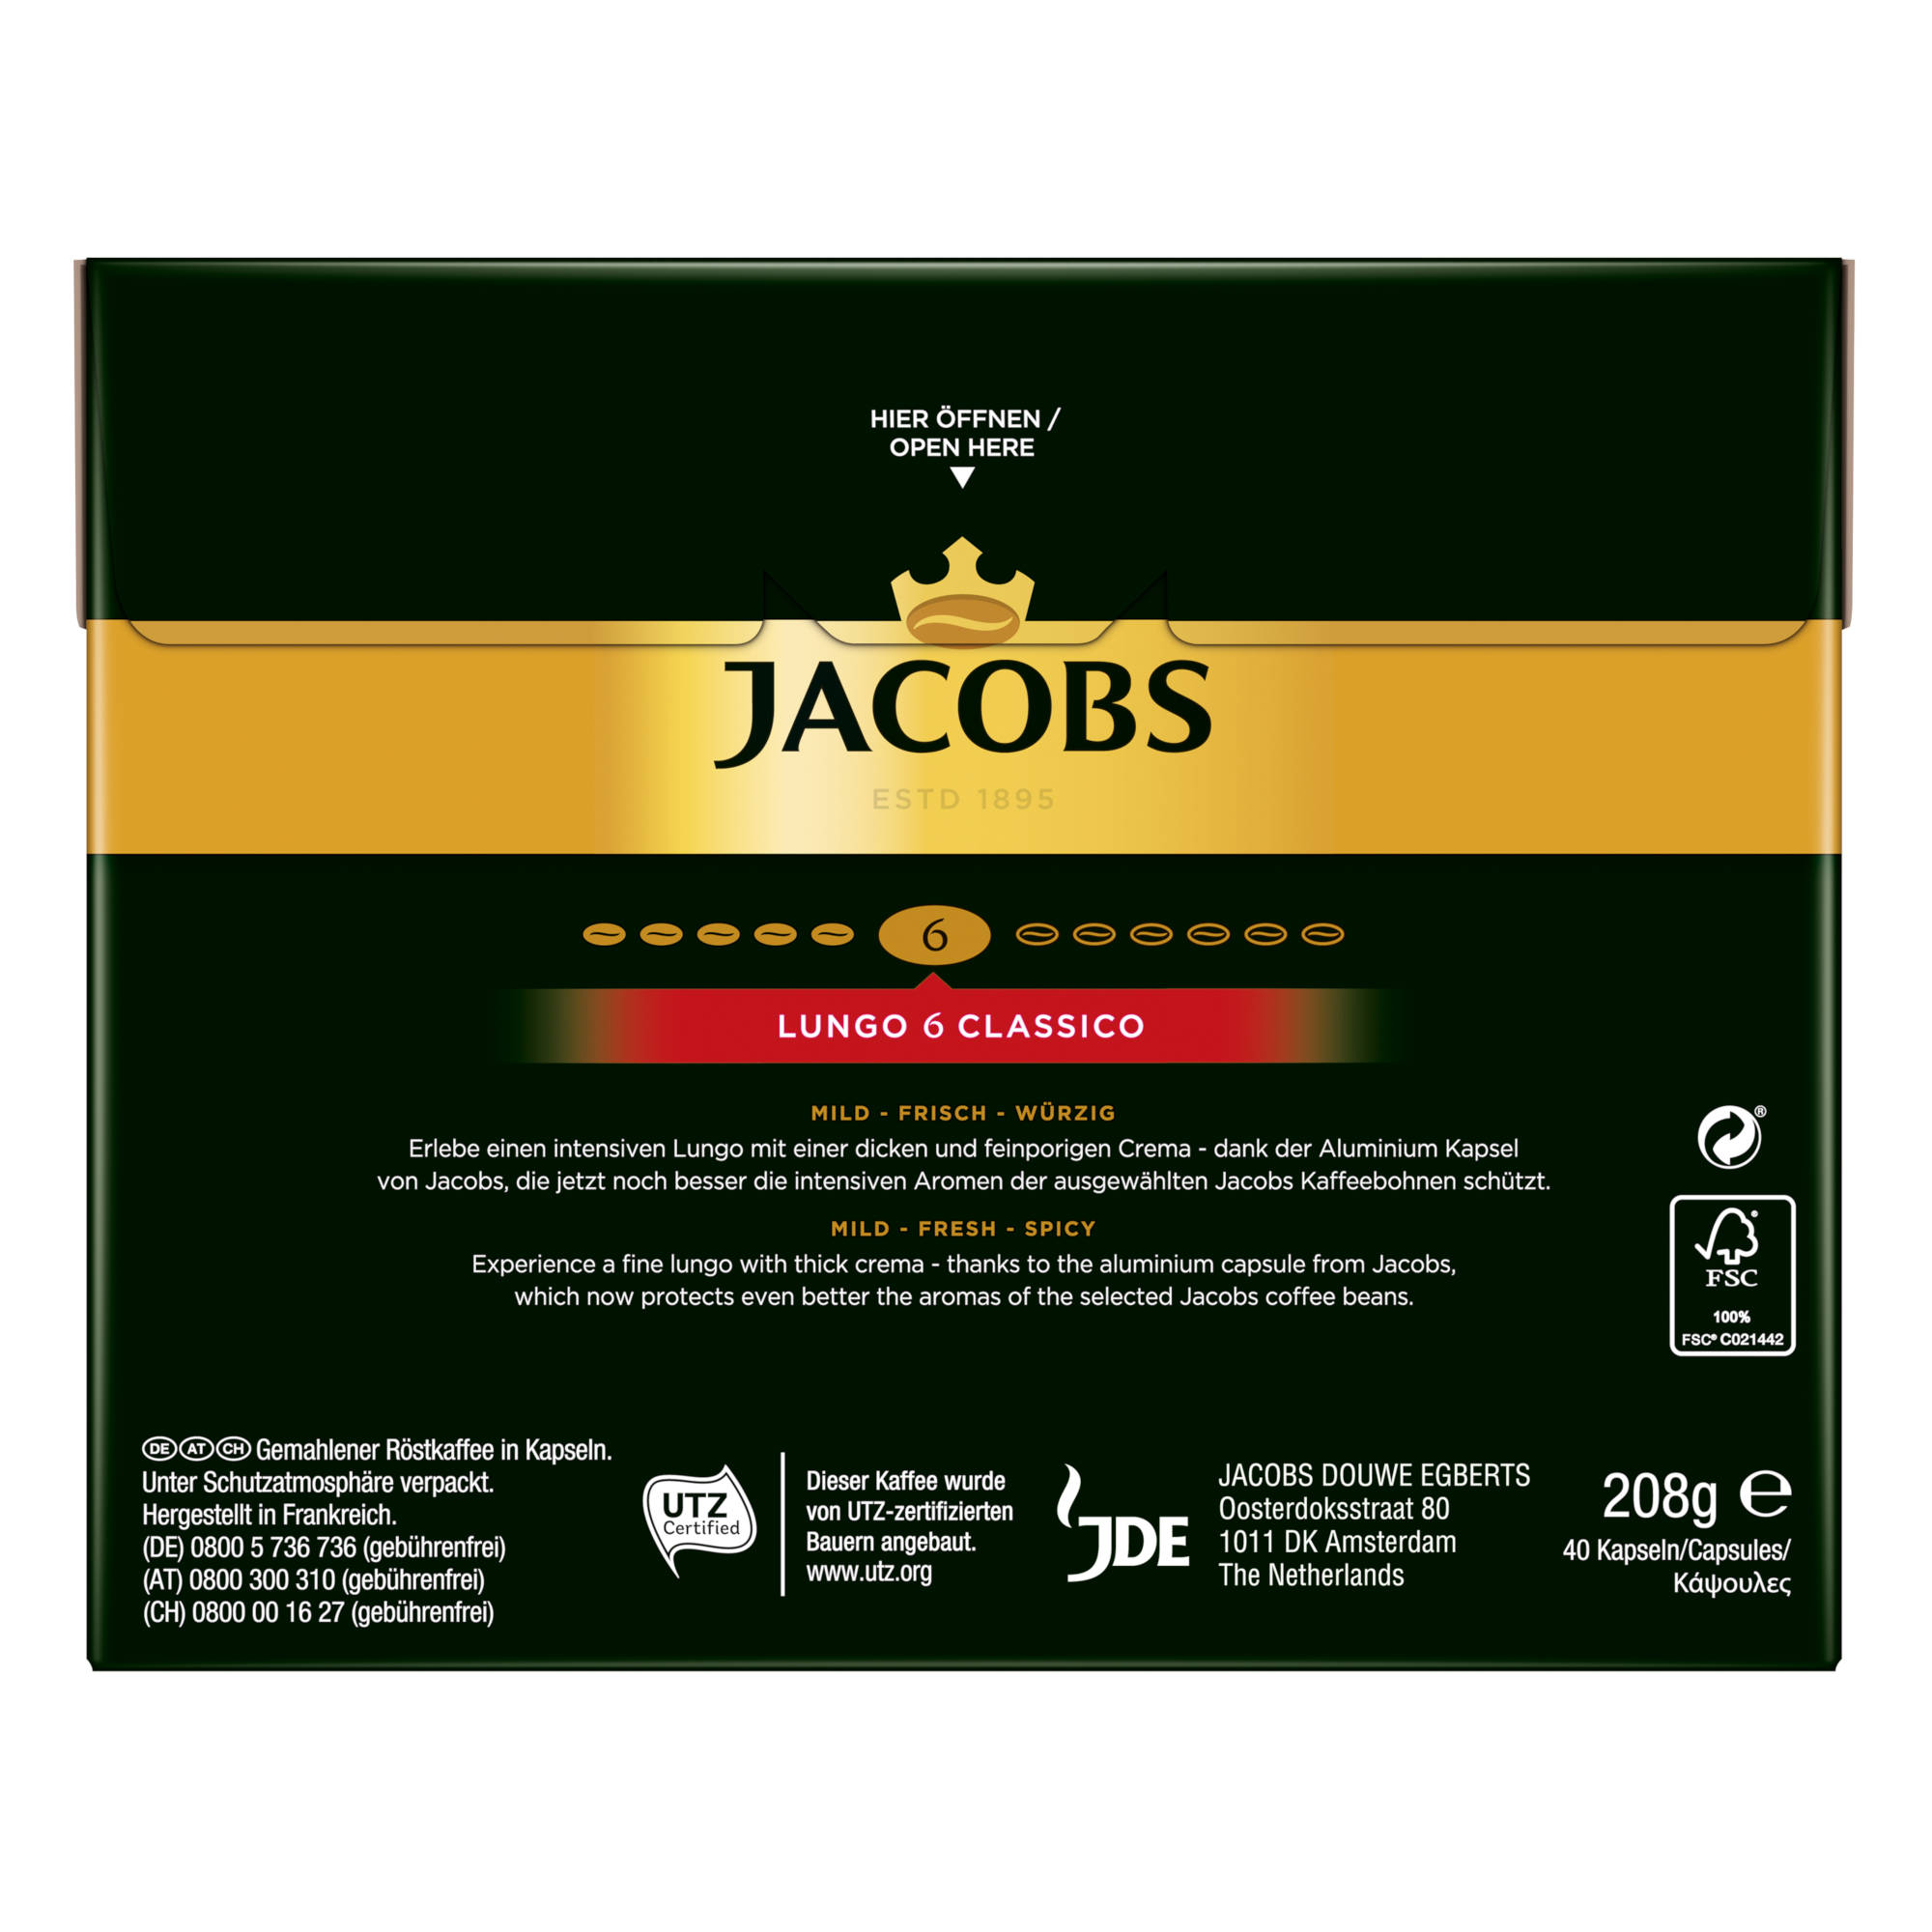 JACOBS Lungo 6 Classico + Intenso 160 (Nespresso System) - 10 Kaffeekapseln kompatible XXL-Packs Espresso Nespresso®